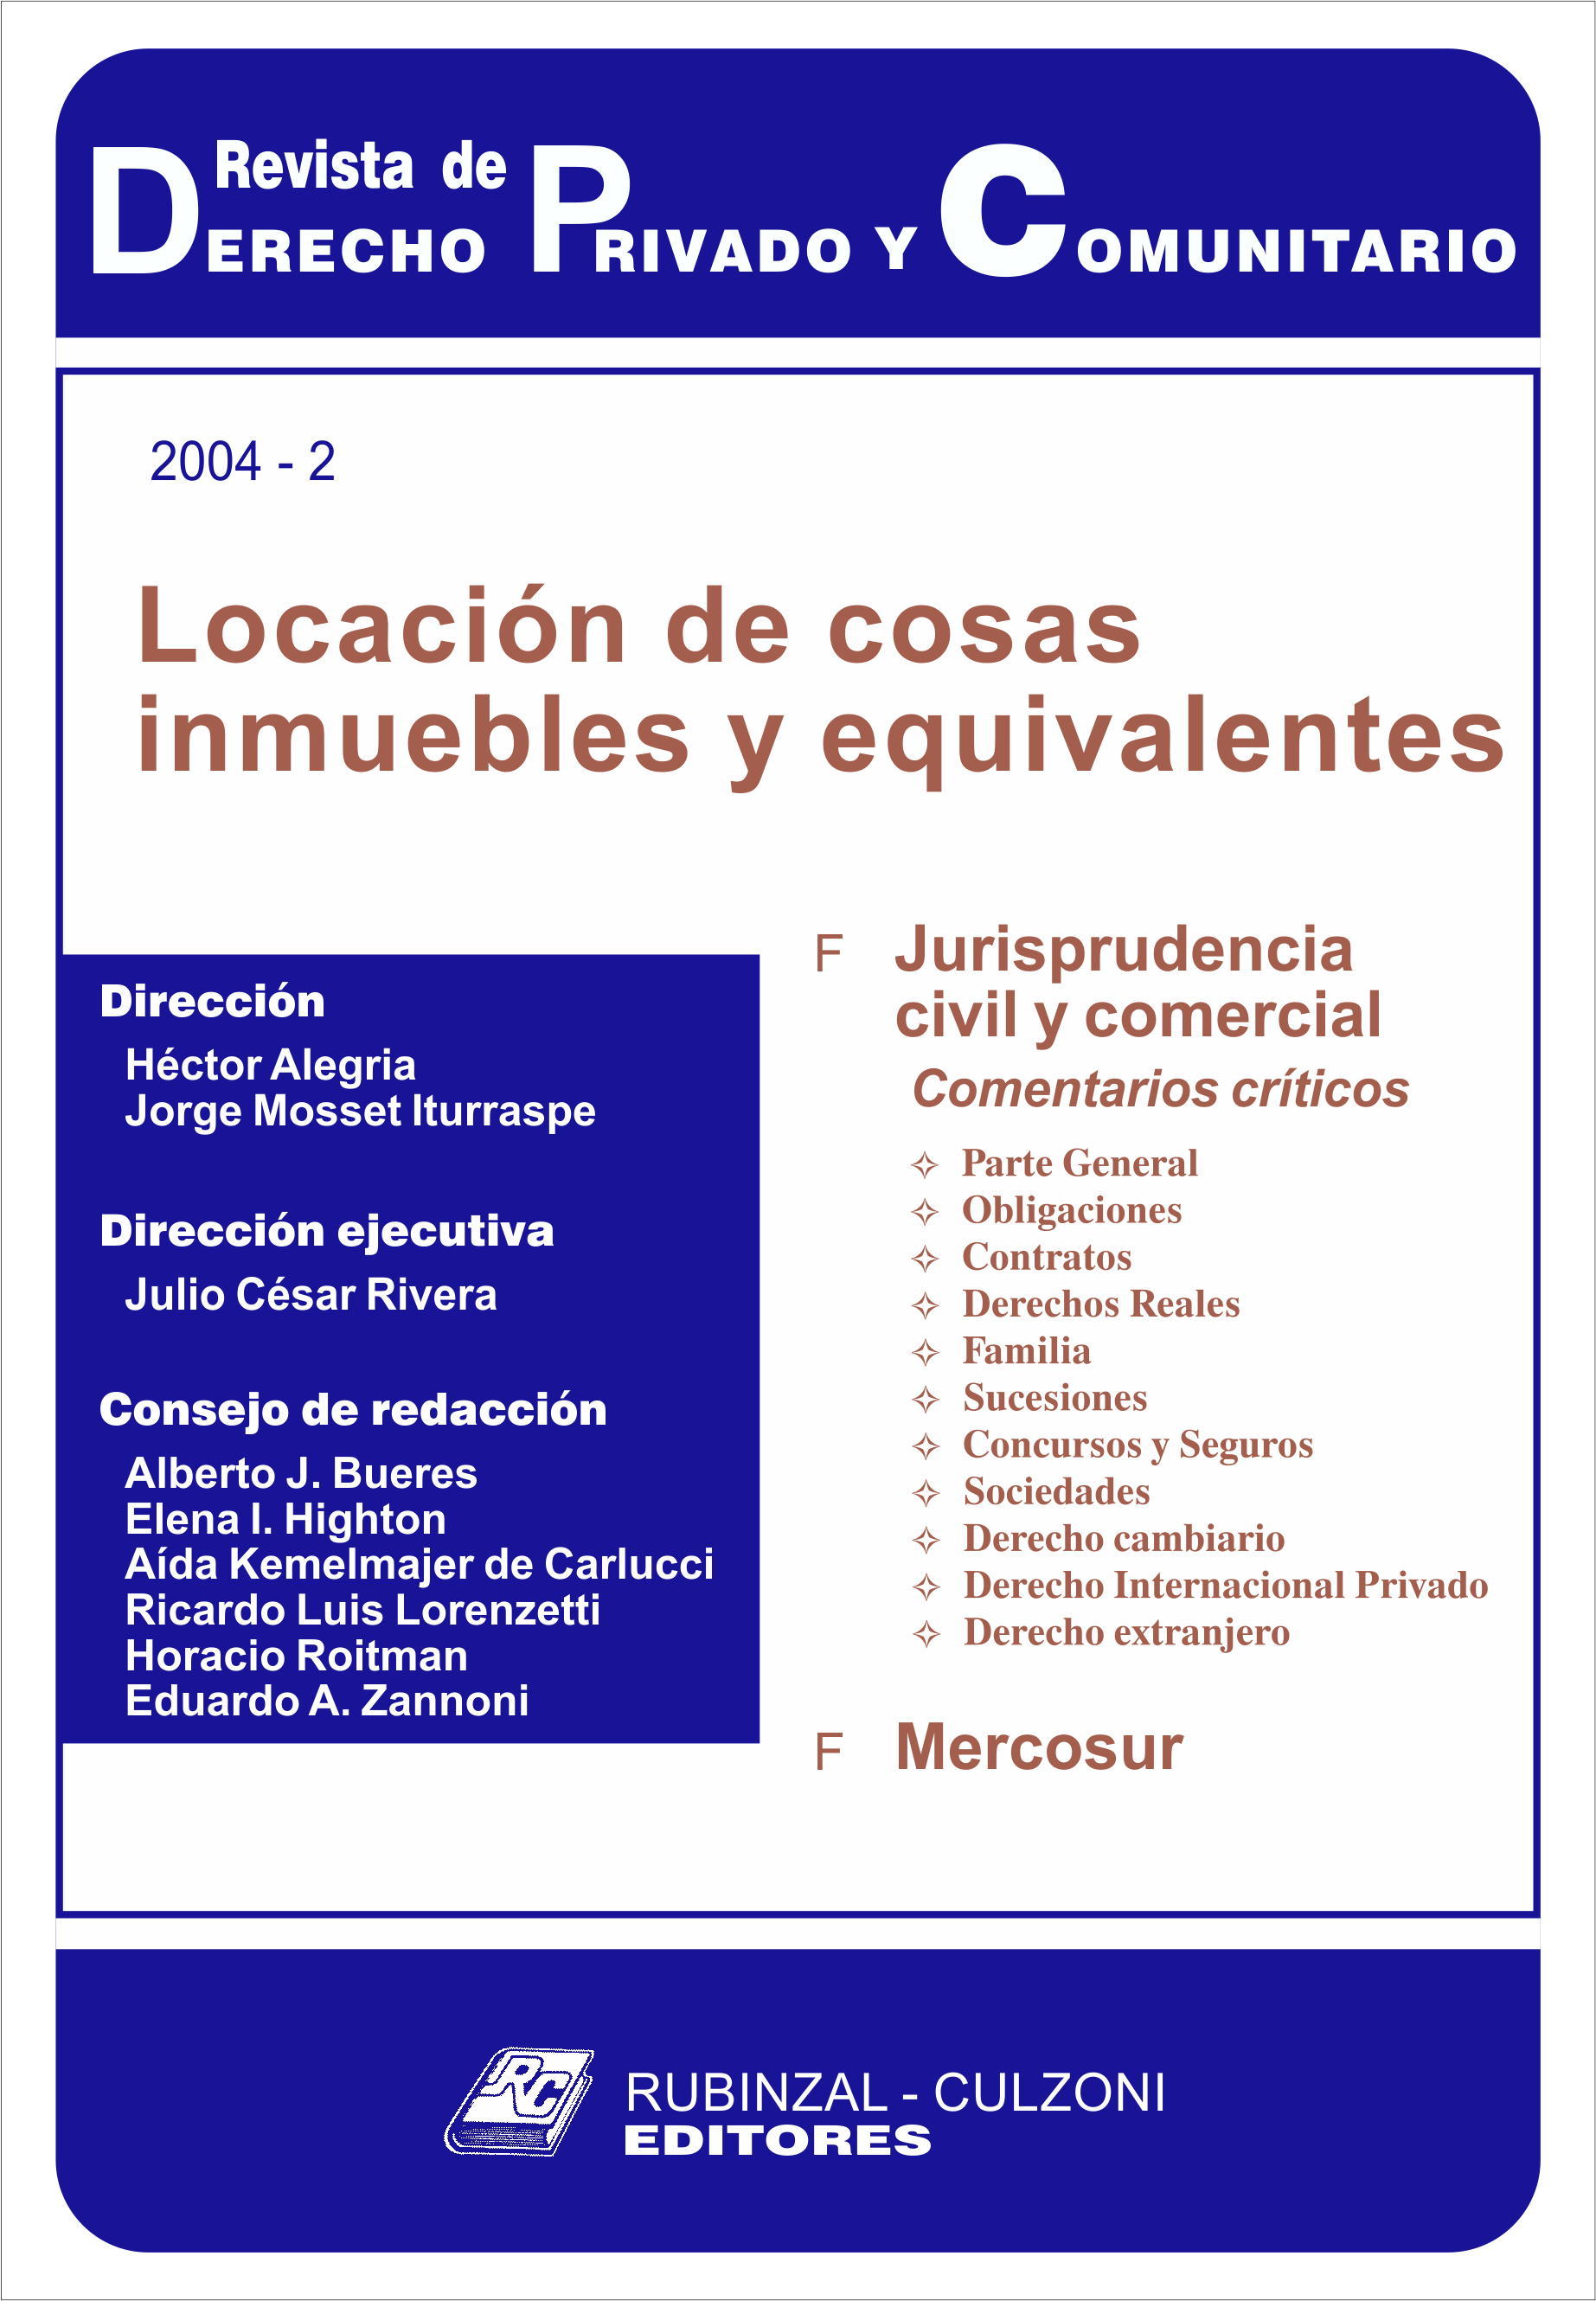 Revista de Derecho Privado y Comunitario - Locación de cosas inmuebles y equivalentes.